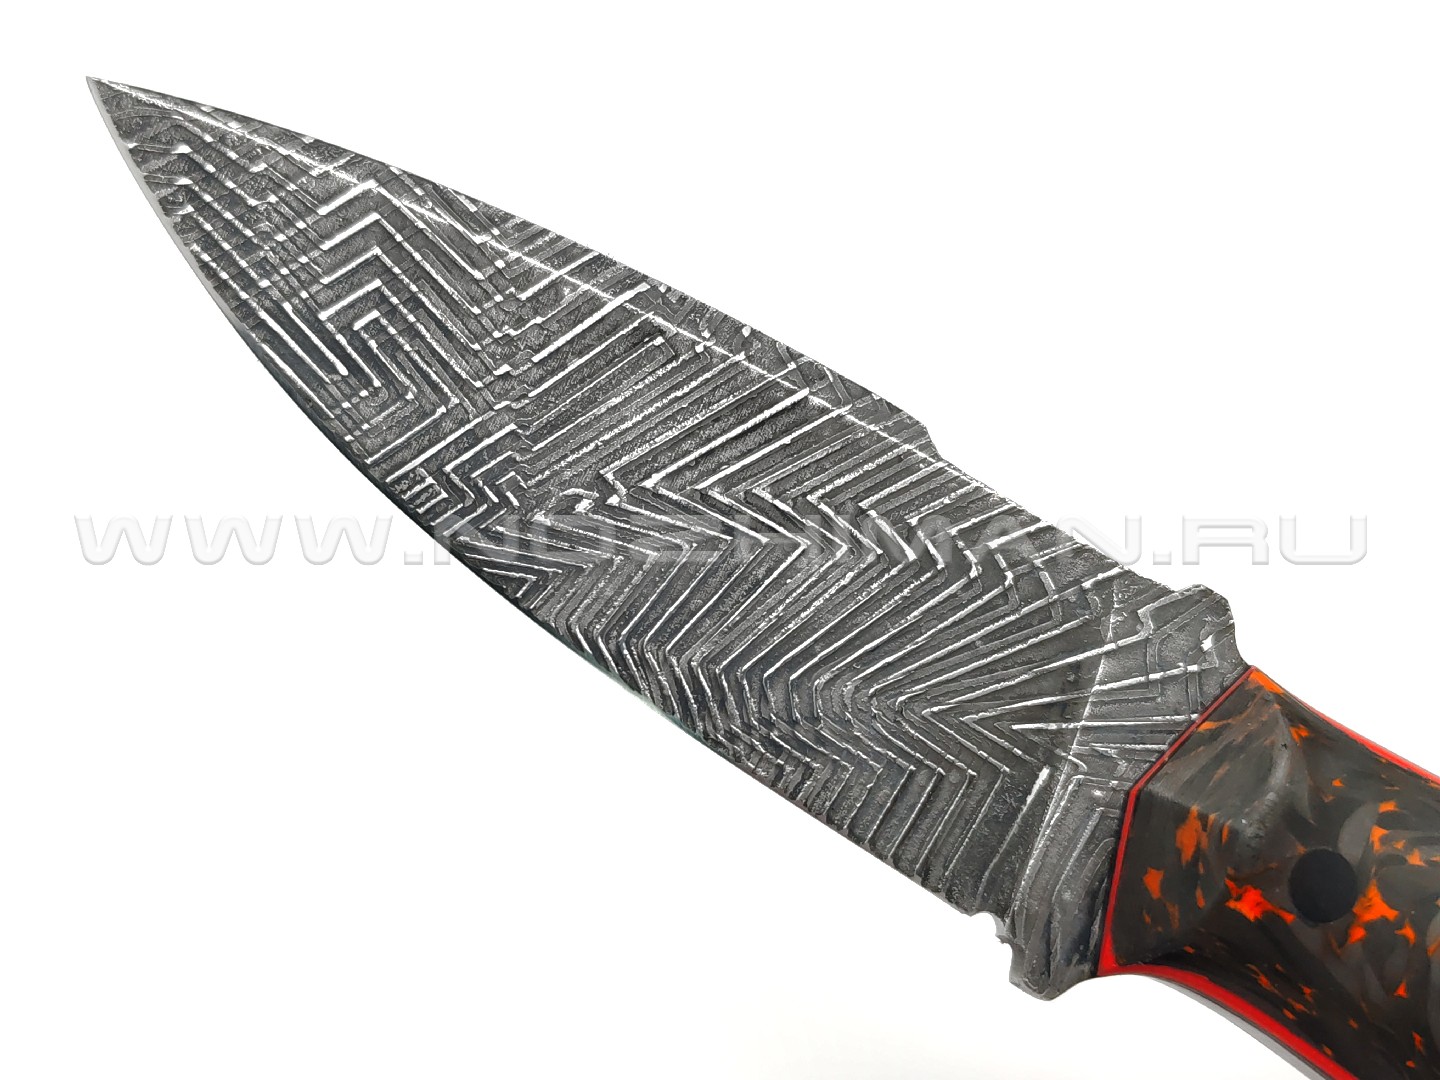 Богдан Гоготов нож NBG-58 сталь Cromax травление, рукоять Chaotic carbon fiber orange